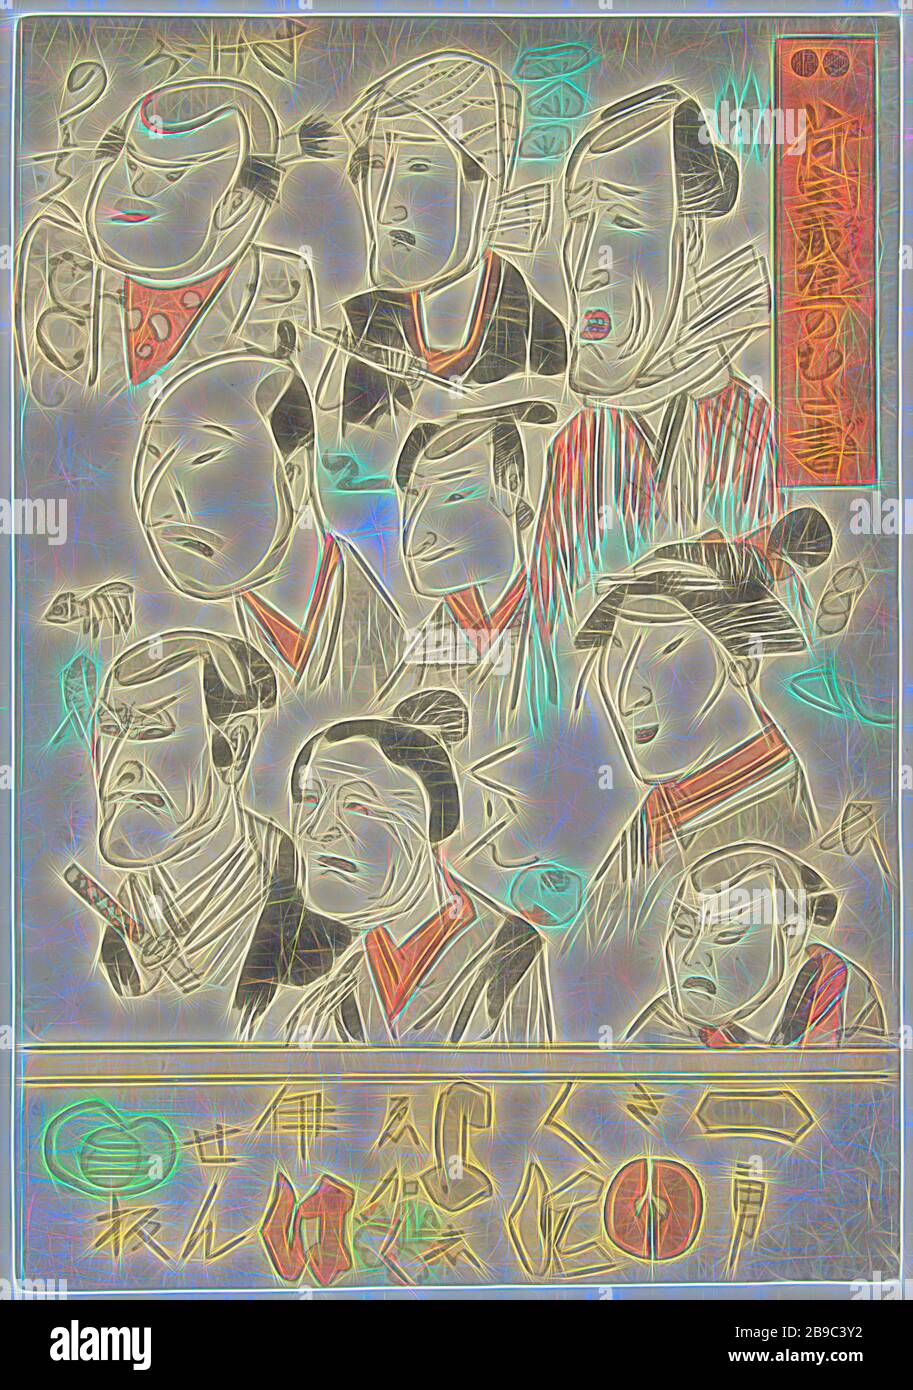 Neun Schauspieler porträtieren Doodles an der Wand eines Kaufhauses (Serientitel) Nitakaragura kabe no Mudagaki (Serientitel auf Objekt), Wand, auf der Graffiti mit neun Schauspielerporträts abgebildet sind., Utagawa Kuniyoshi (auf Objekt erwähnt), Japan, 1848, Papier, Farbholzschnitt, h 369 mm × w 254 mm, neu von Gibon, vorgestellt Design mit warmem, fröhlichem Glanz von Helligkeit und Lichtstrahlen. Klassische Kunst mit moderner Note neu erfunden. Fotografie, inspiriert vom Futurismus, die dynamische Energie moderner Technologie, Bewegung, Geschwindigkeit und Kultur revolutionieren. Stockfoto